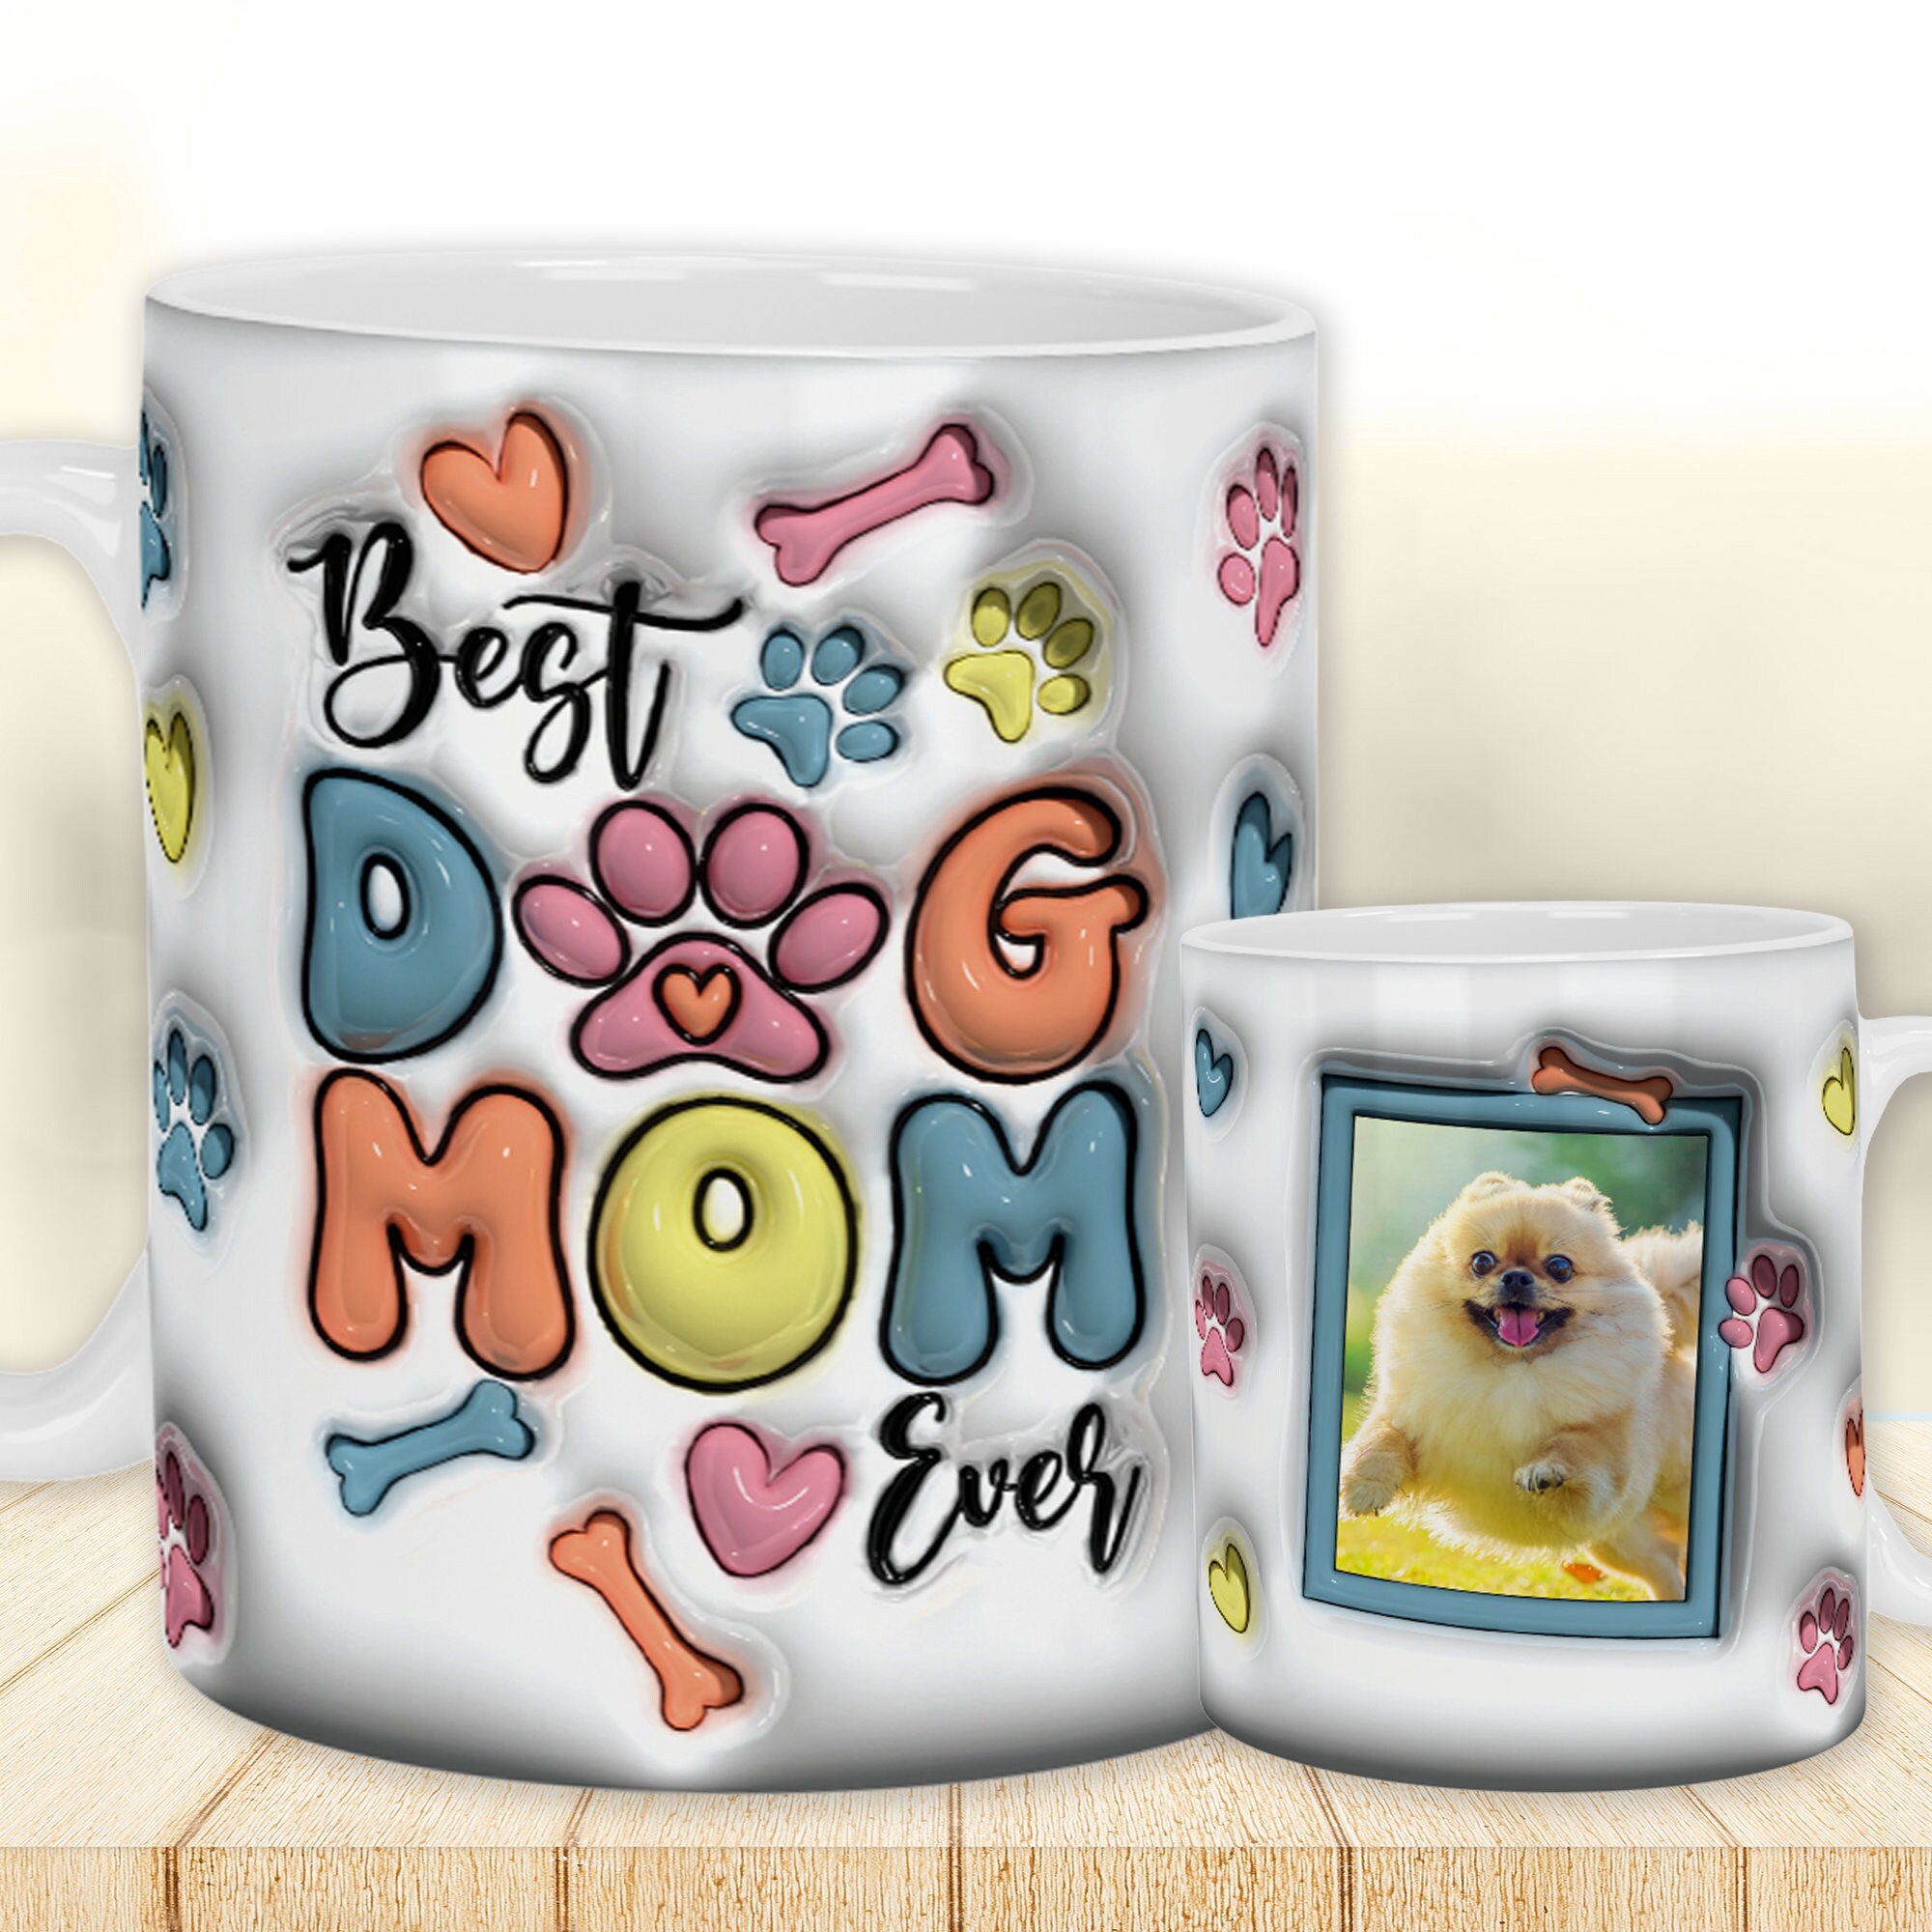 Love Mug®: Mom Mug - Mom Coffee Mug - Best Mom Ever Mug and Best Mom Ever  Gifts - Christmas Gifts Fo…See more Love Mug®: Mom Mug - Mom Coffee Mug 